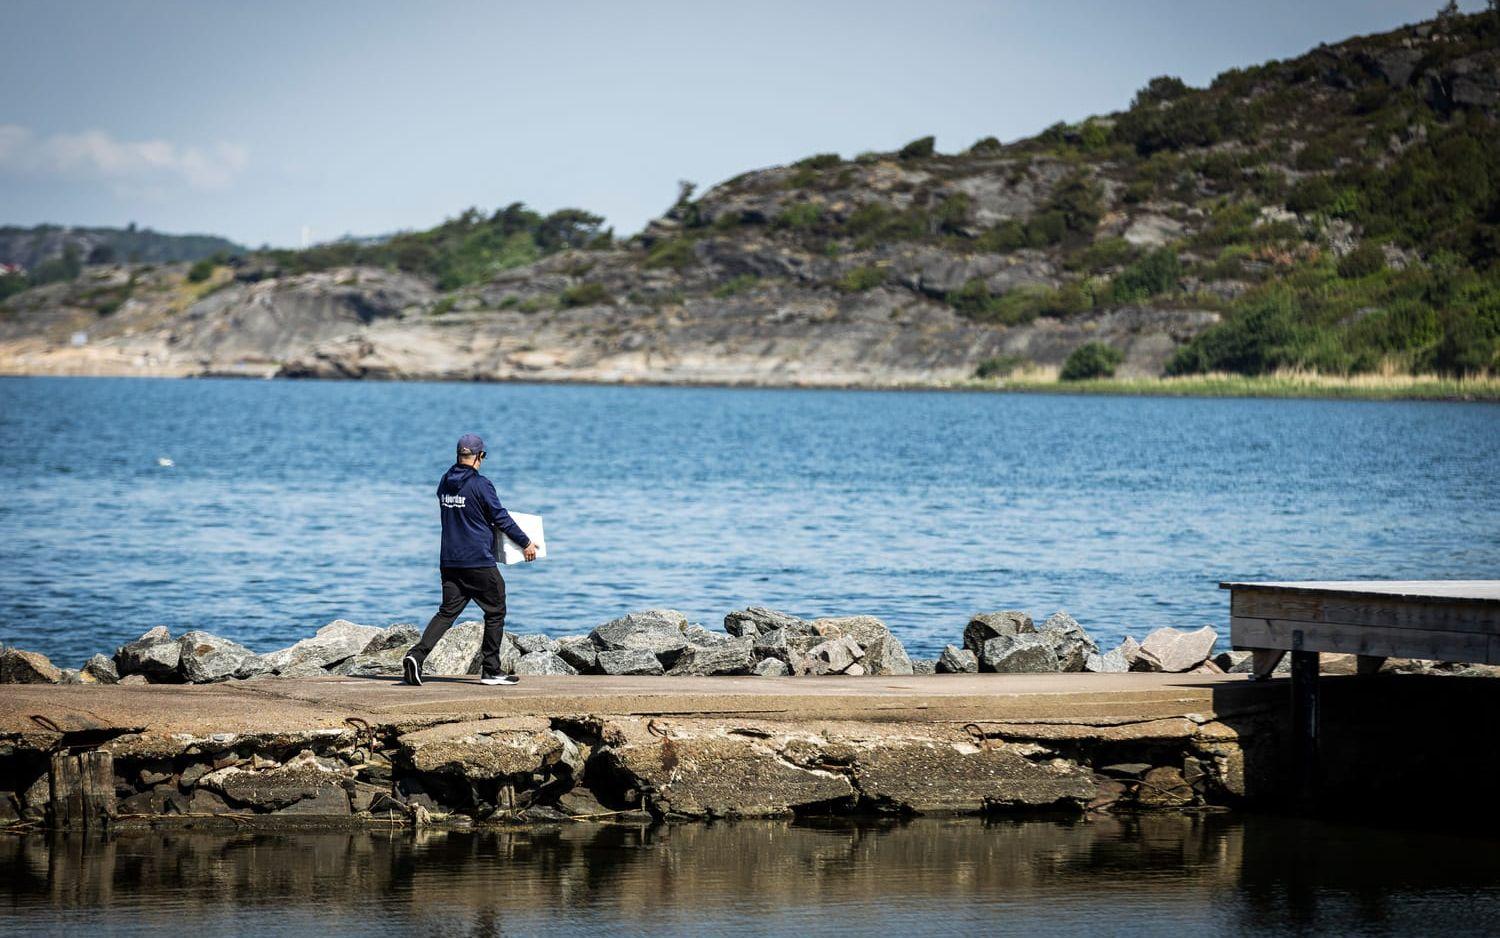 Antalet ålar har minskat dramatiskt och får nu inte längre fiskas längs den svenska västkusten.